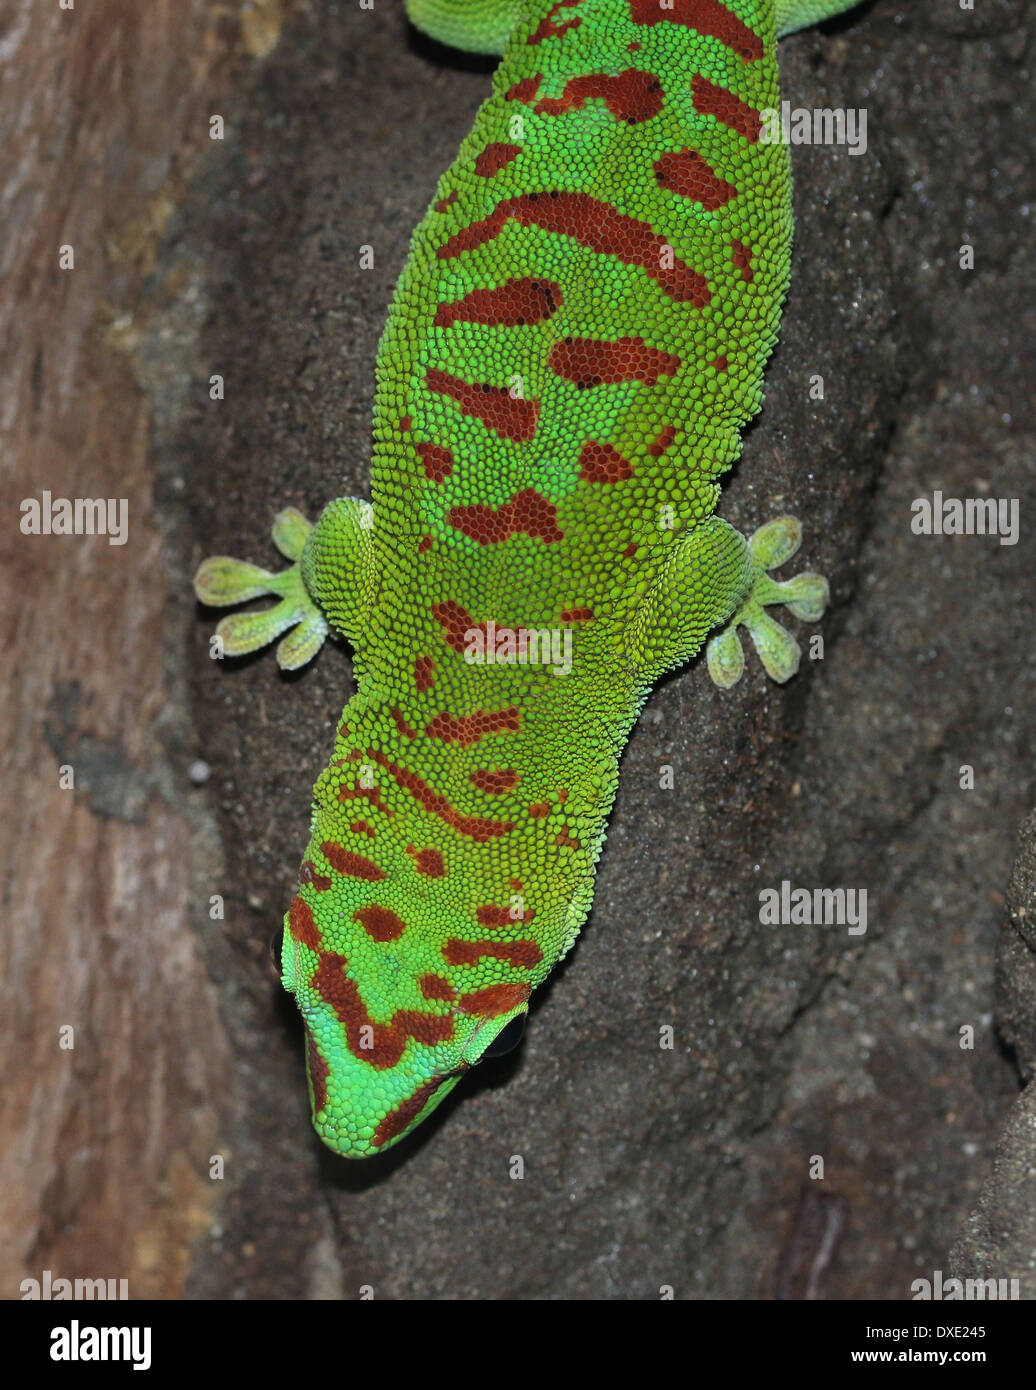 Gecko vert de Madagascar (Phelsuma madagascariensis jour) Banque D'Images